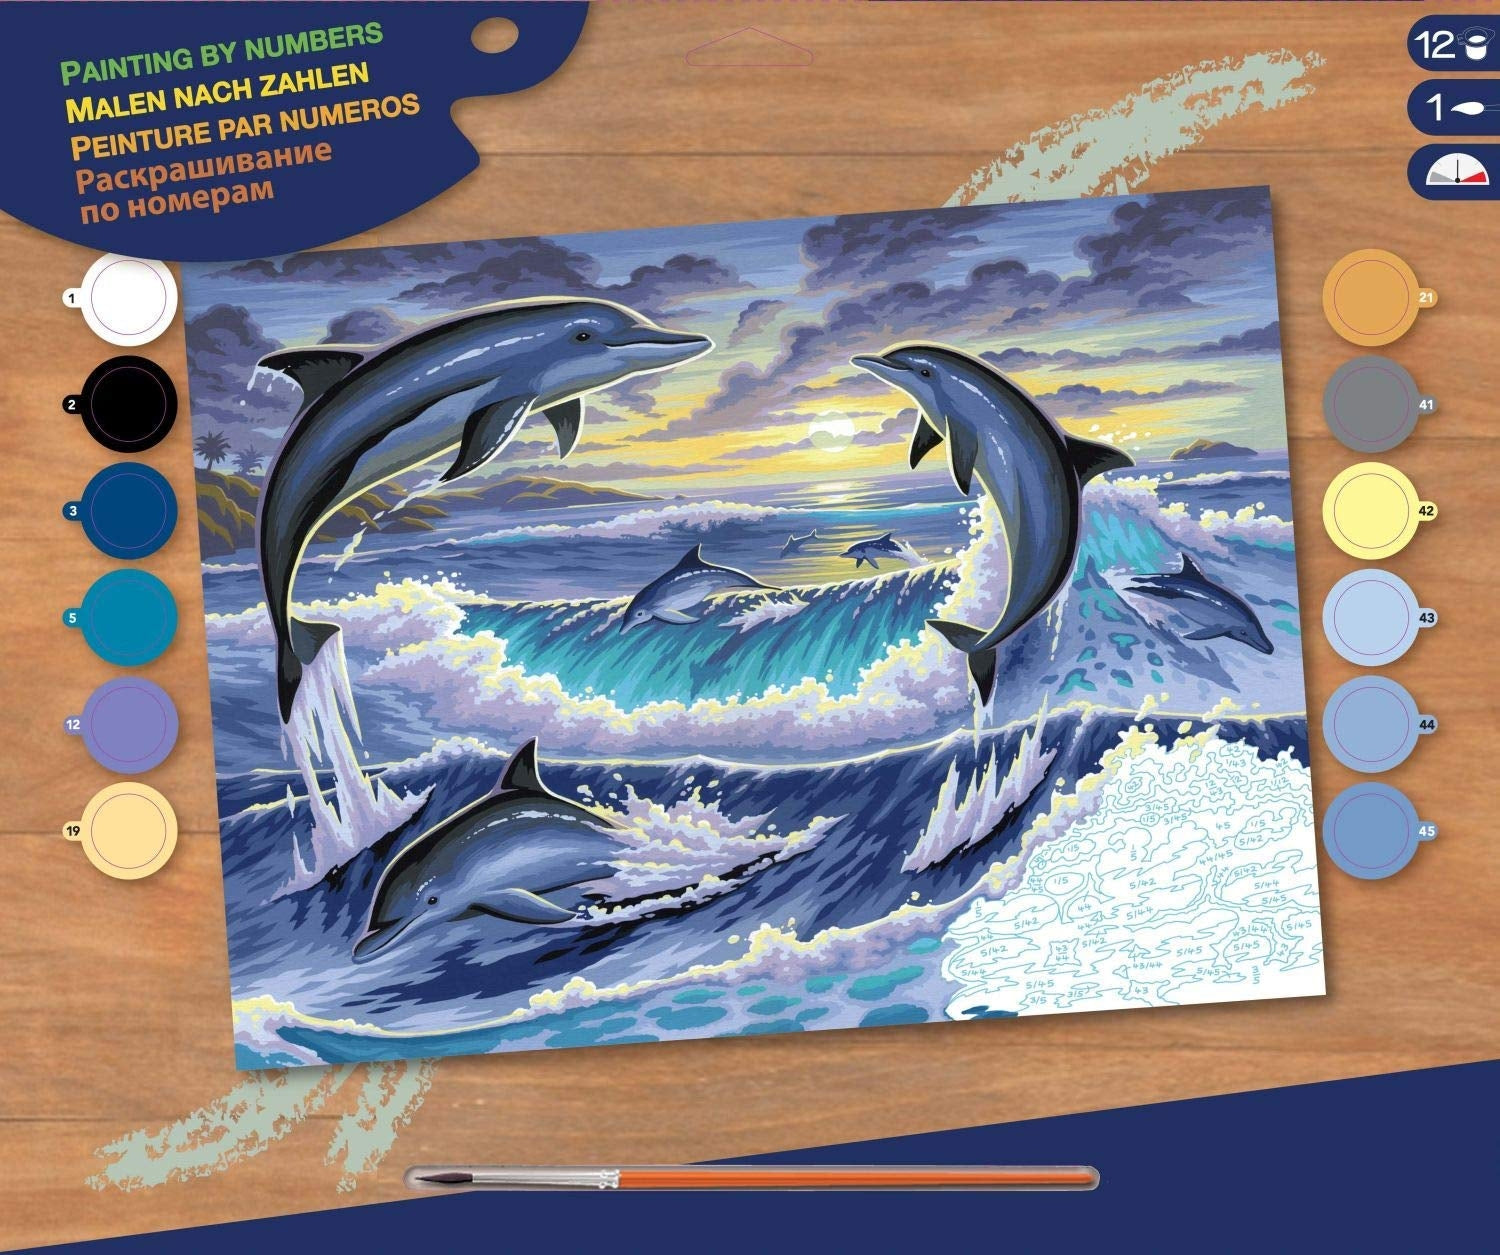 KSG - Großes Gemälde nach Zahlen - Delphin -Sonnenaufgang